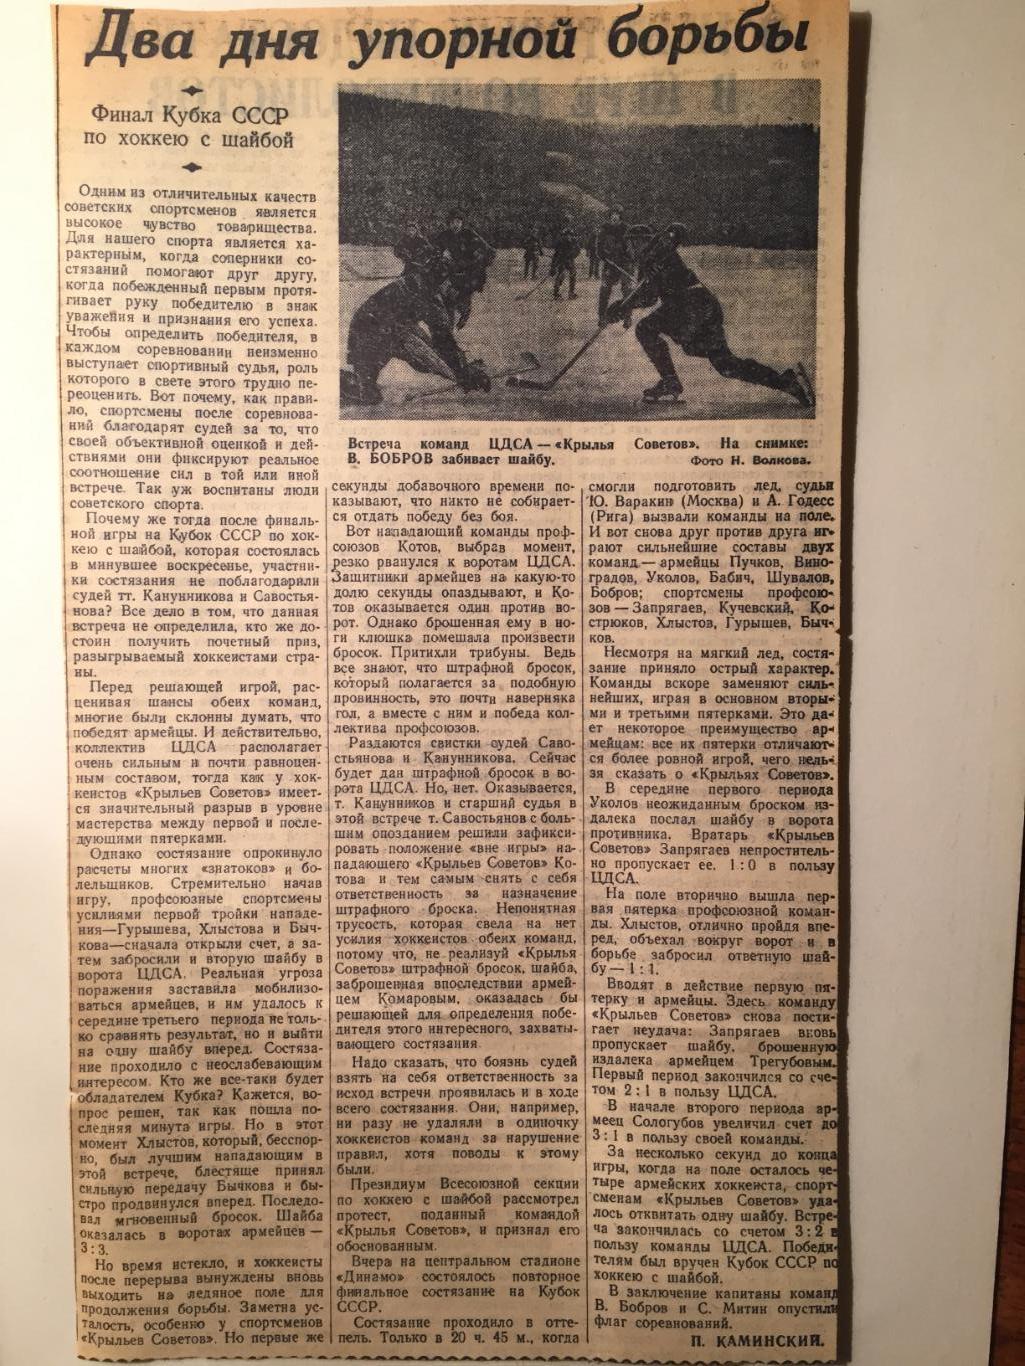 Вырезки ЦСК МО(ЦСКА) Чемпион СССР и обладатель Кубка СССР 1955 хоккей 3